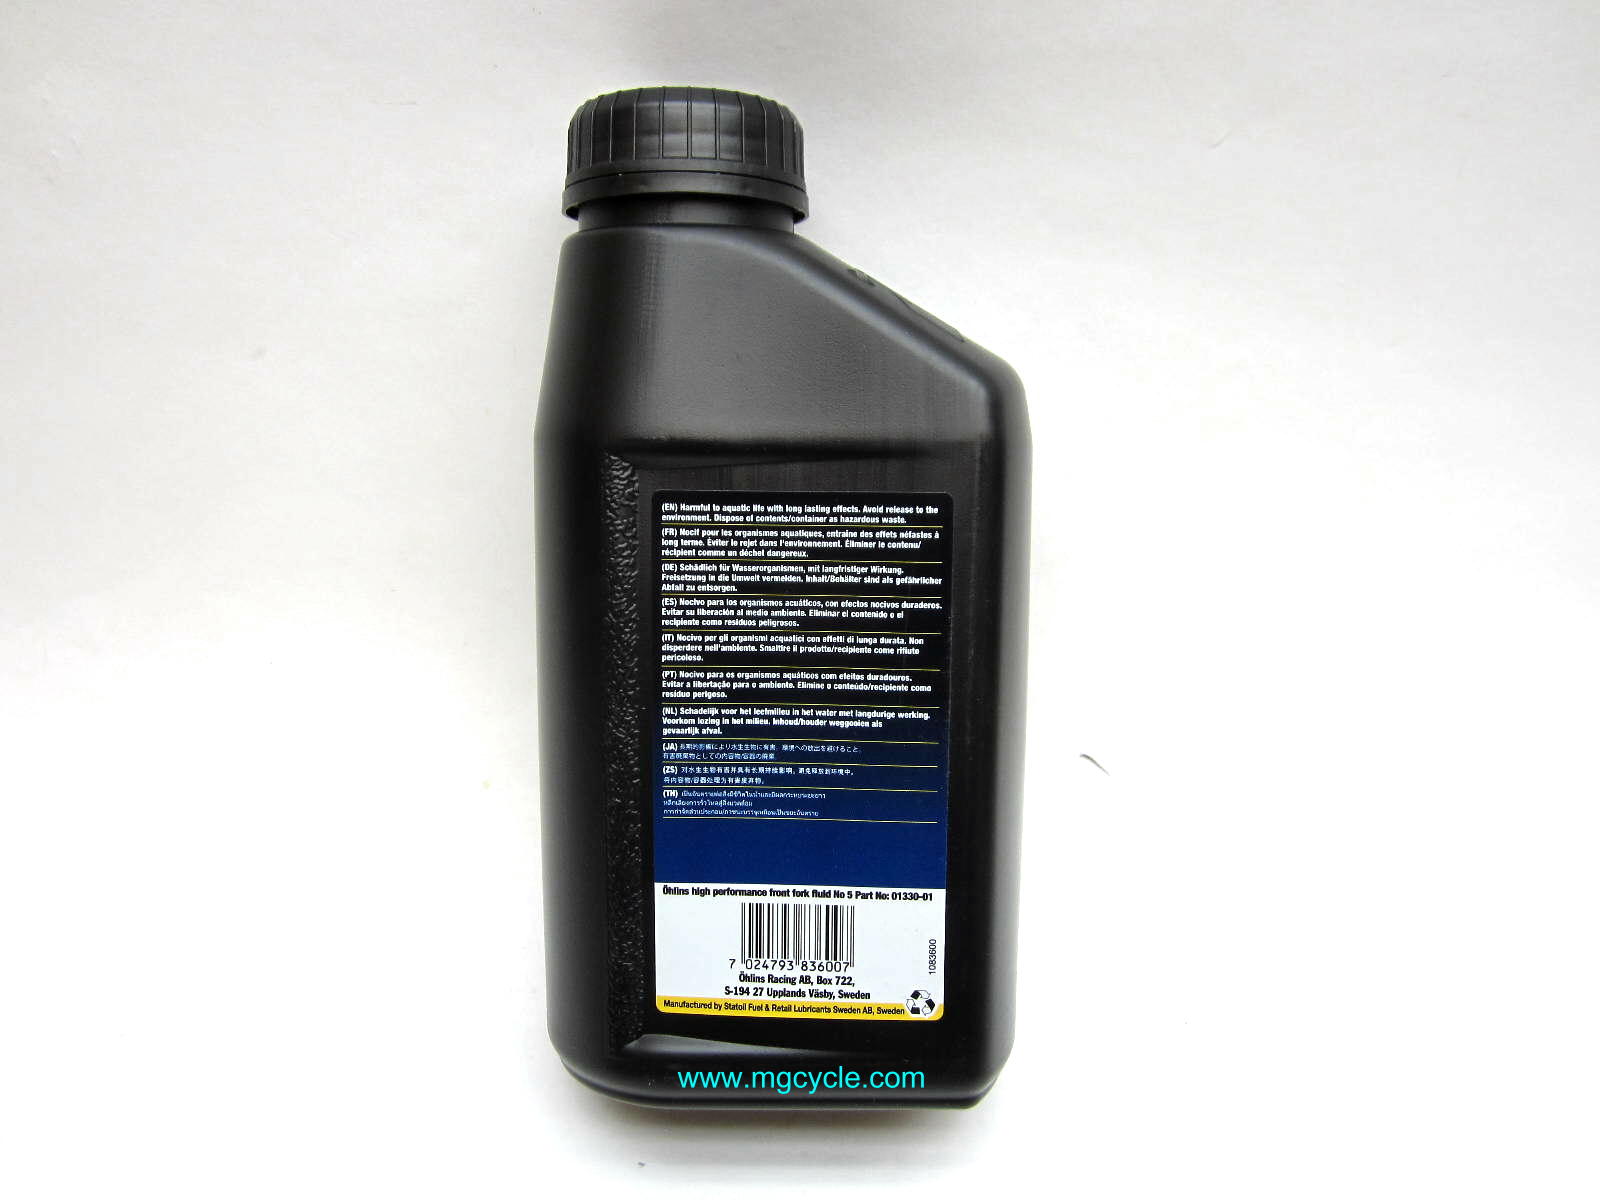 Ohlins fork oil 5W, 1 liter bottle - Click Image to Close